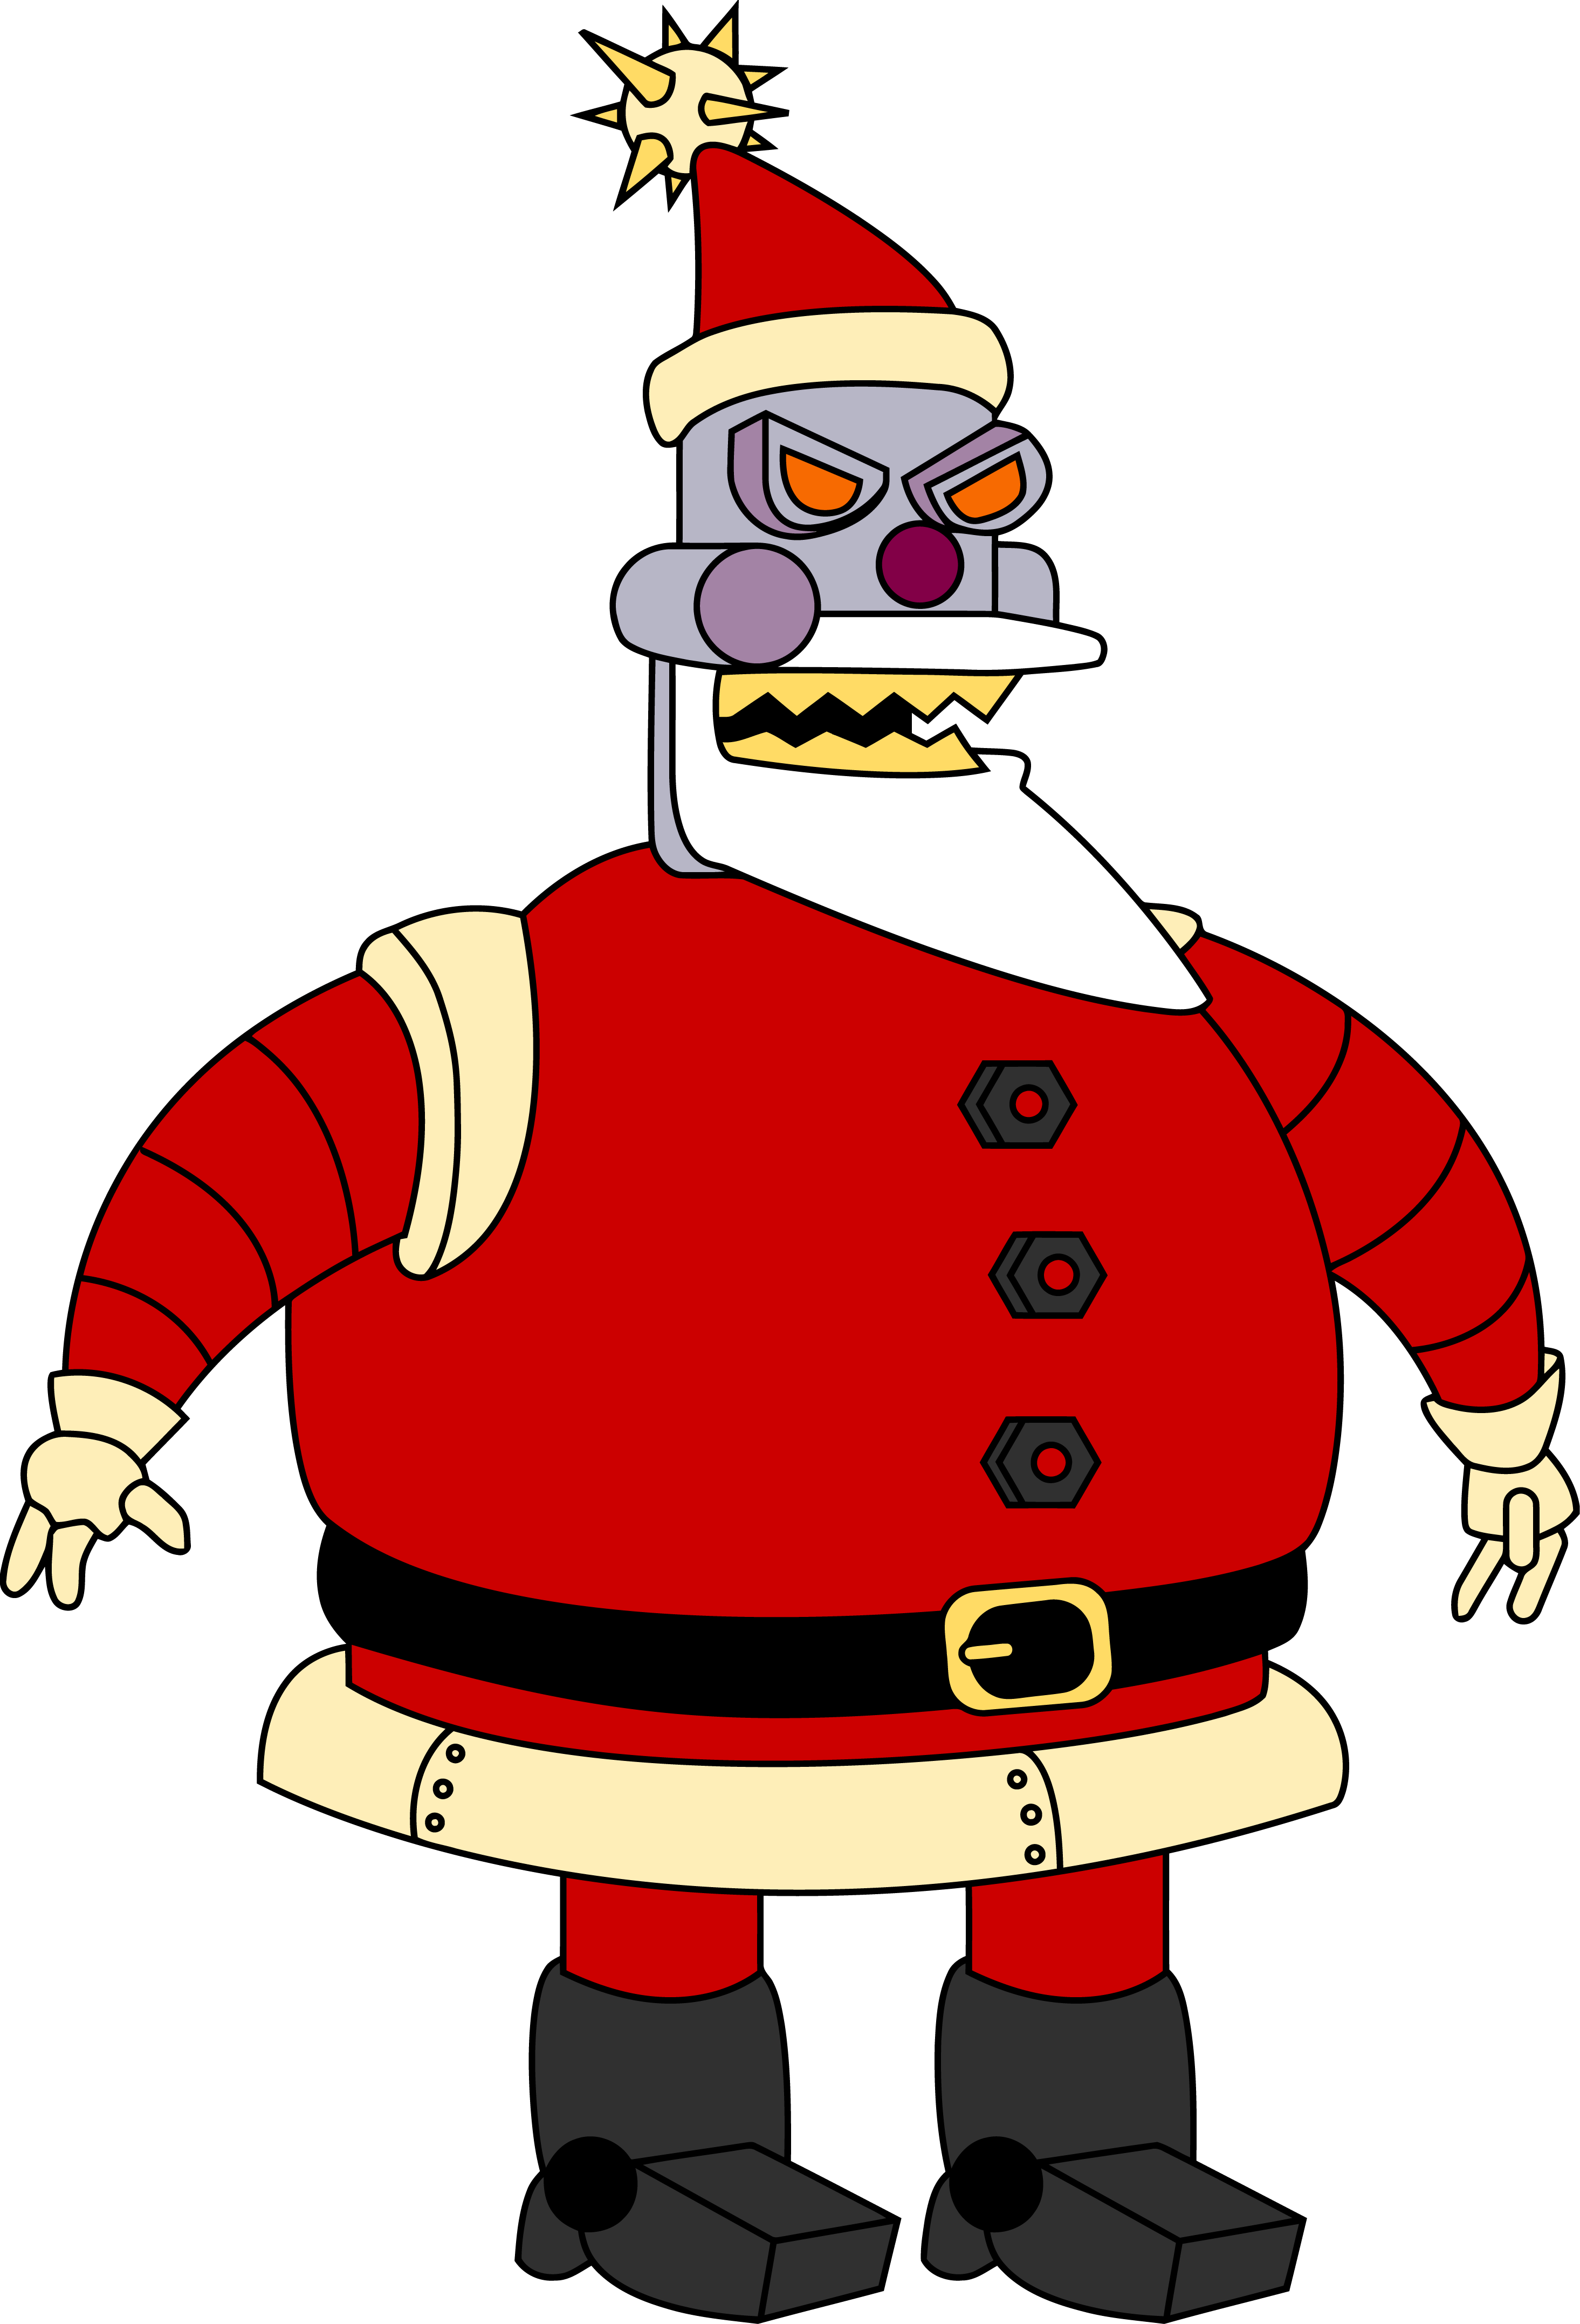 Worlds Art Bender Of Claus Futurama Santa PNG Image